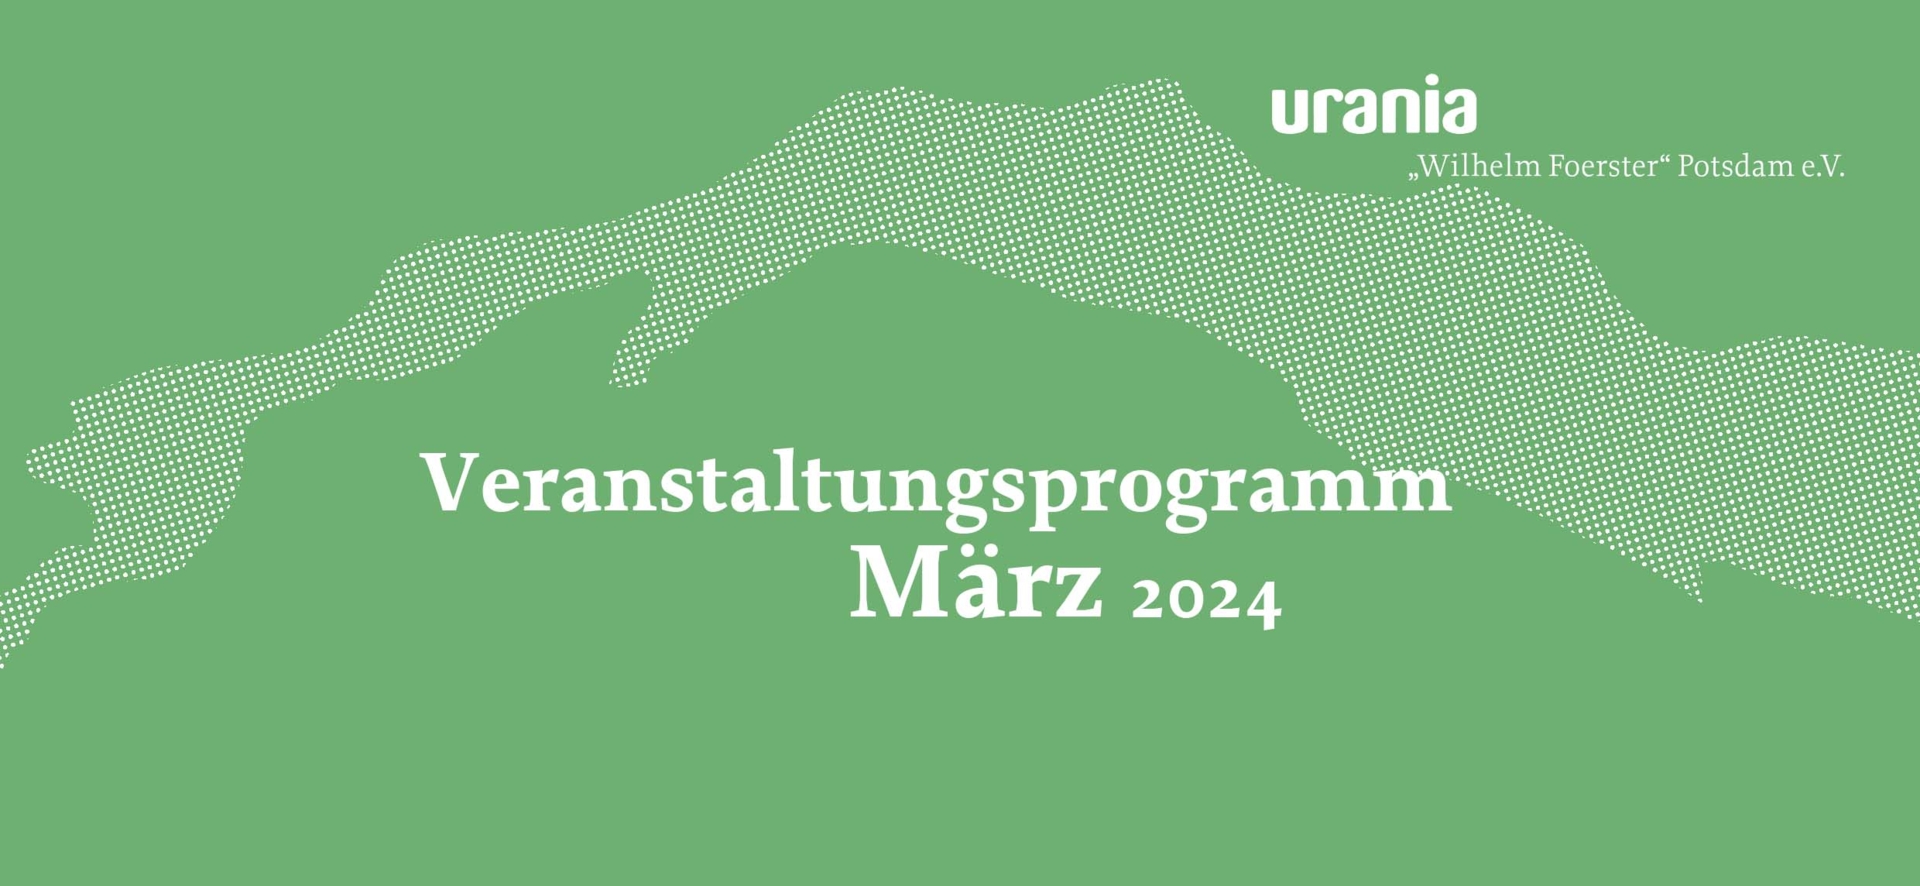 URANIA Potsdam Programm März 2024